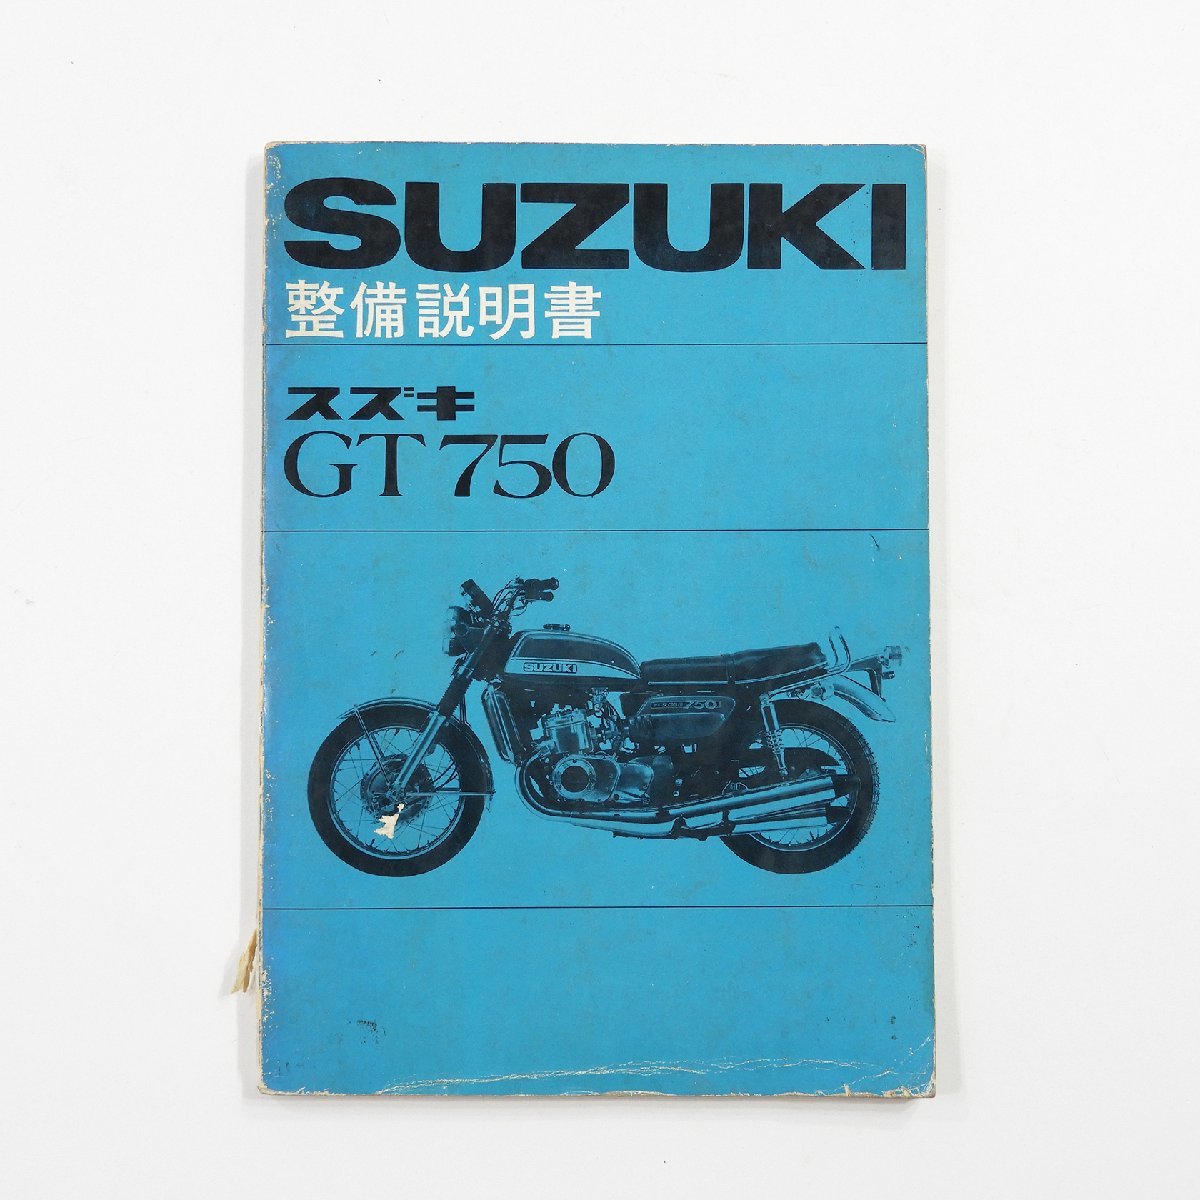 SUZUKI 整備説明書 スズキ GT750 #14453 送料360円 昭和 レトロ 旧車 整備書_画像1